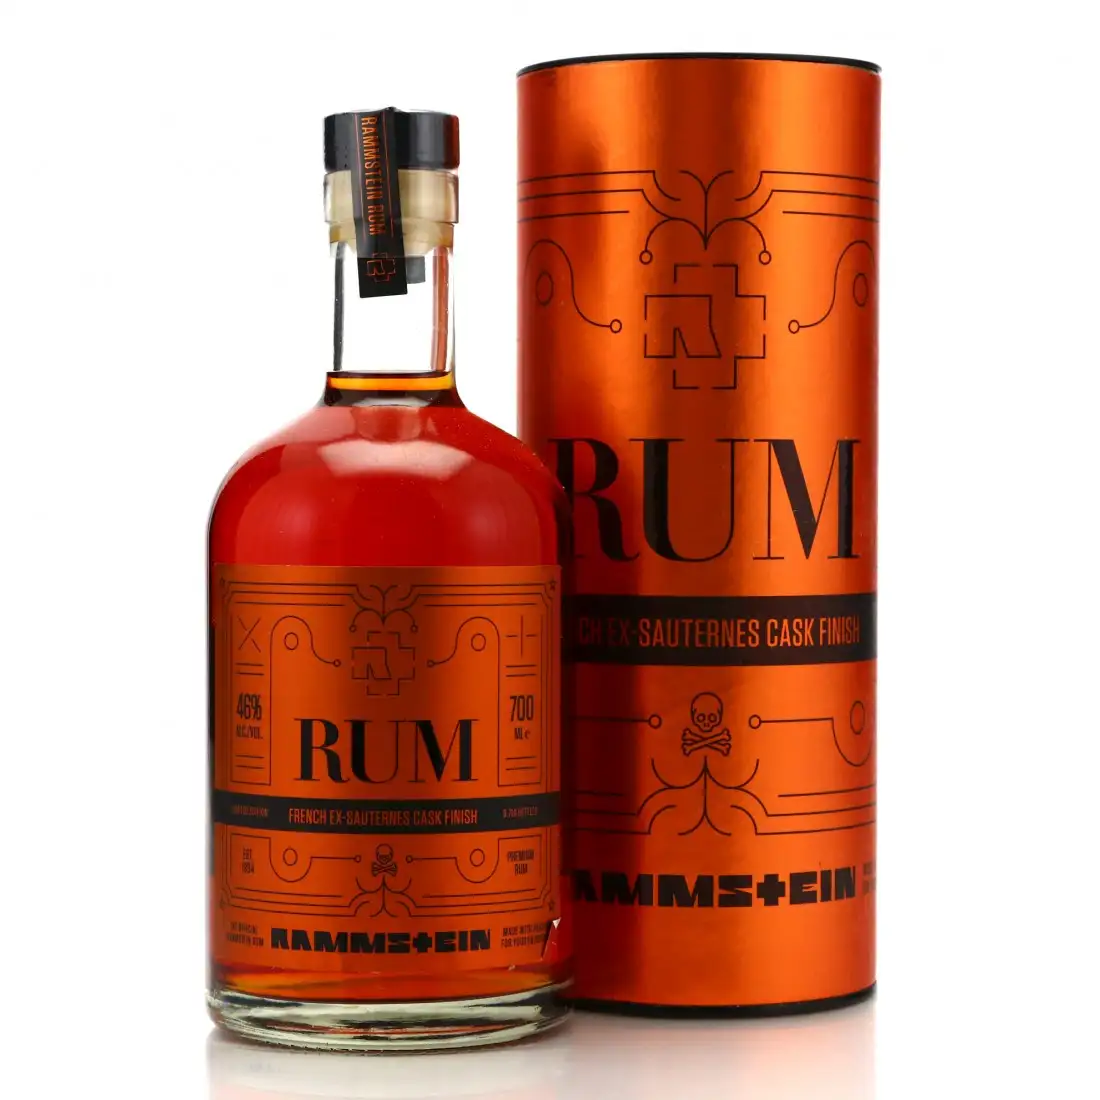 Rammstein Premium Rum - French Ex-Sauternes Cask Finish 46%